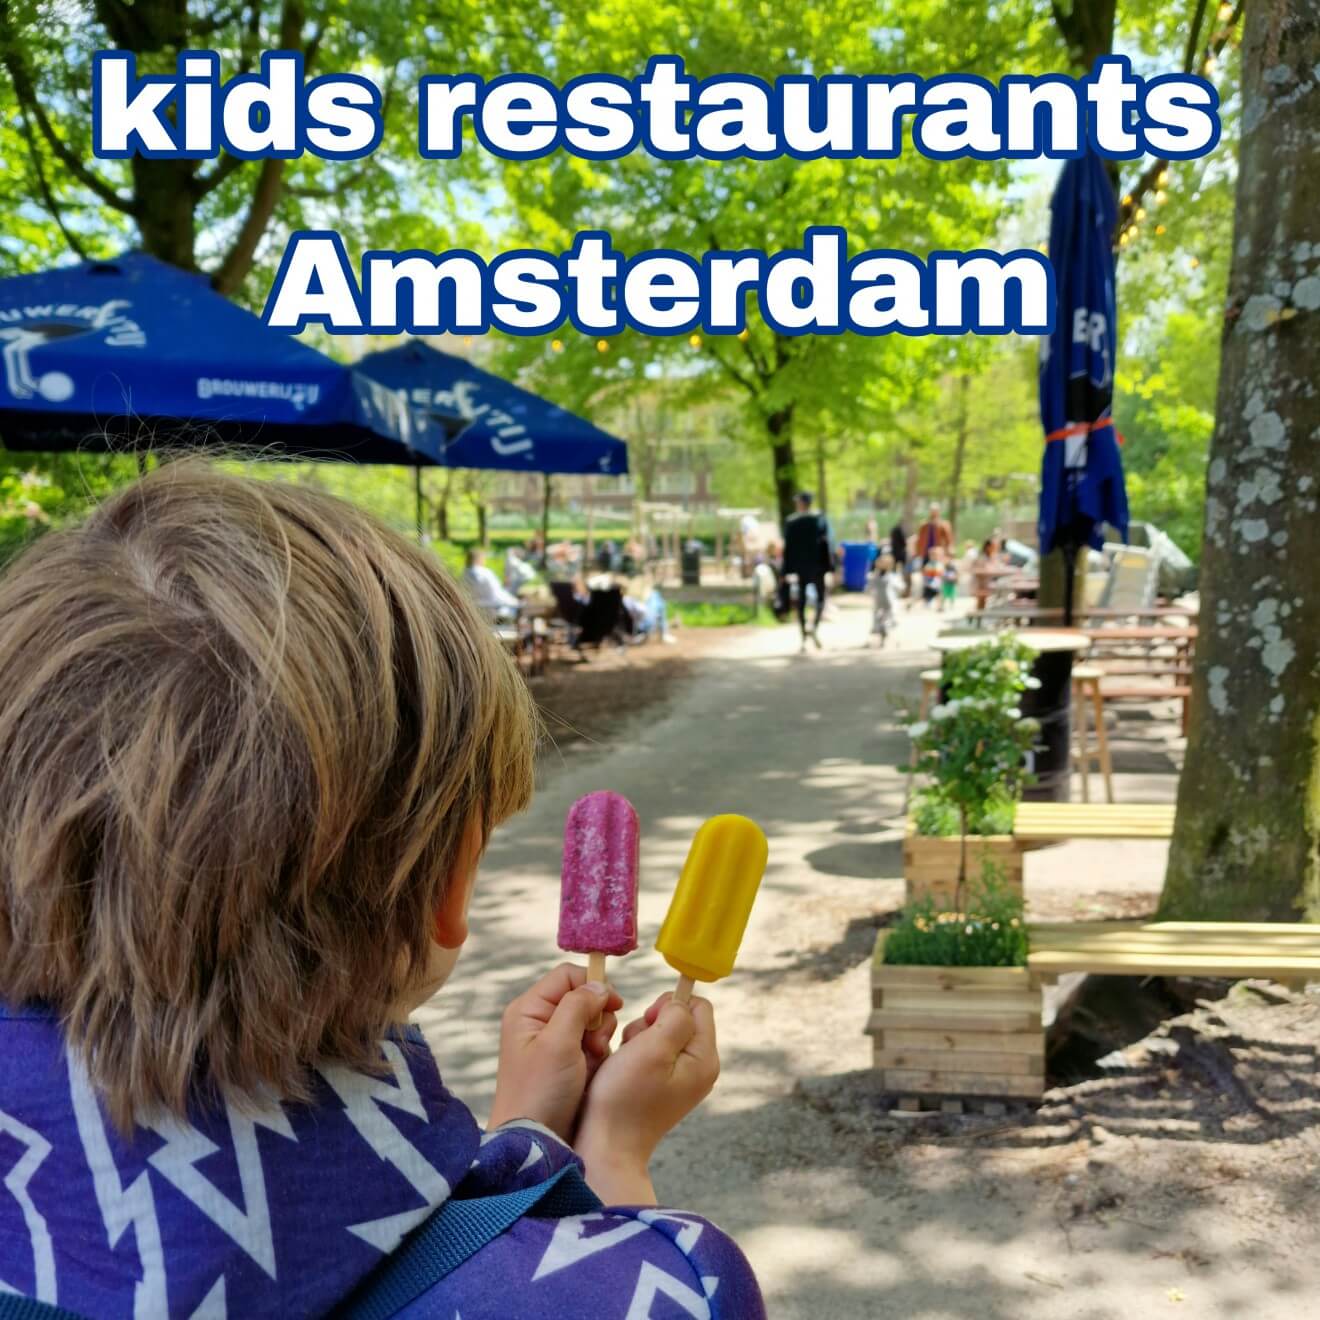 Kindvriendelijke restaurants in Amsterdam: uit eten met kinderen. In Amsterdam vind je heel veel kindvriendelijke restaurants en andere leuke horeca voor gezinnen met kinderen. In dit artikel verzamel ik al die leuke plekken met kinderen en tieners: restaurants, café's, koffiebarren, lunchtentjes, terrassen en meer. Daarnaast deel ik ook een paar hotels.